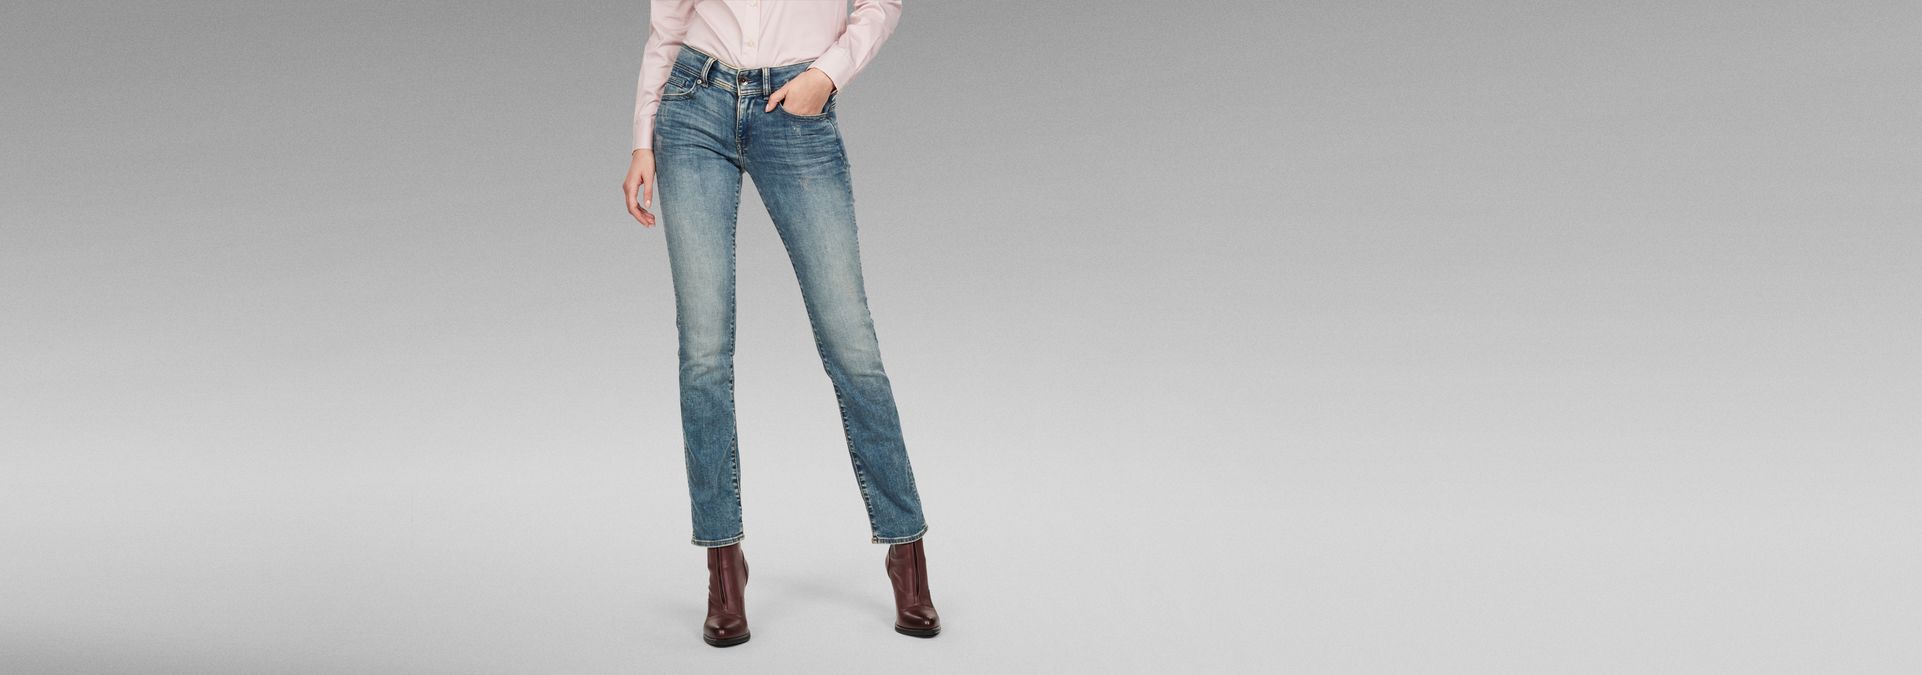 Midge Mid Jeans | Medium | G-Star